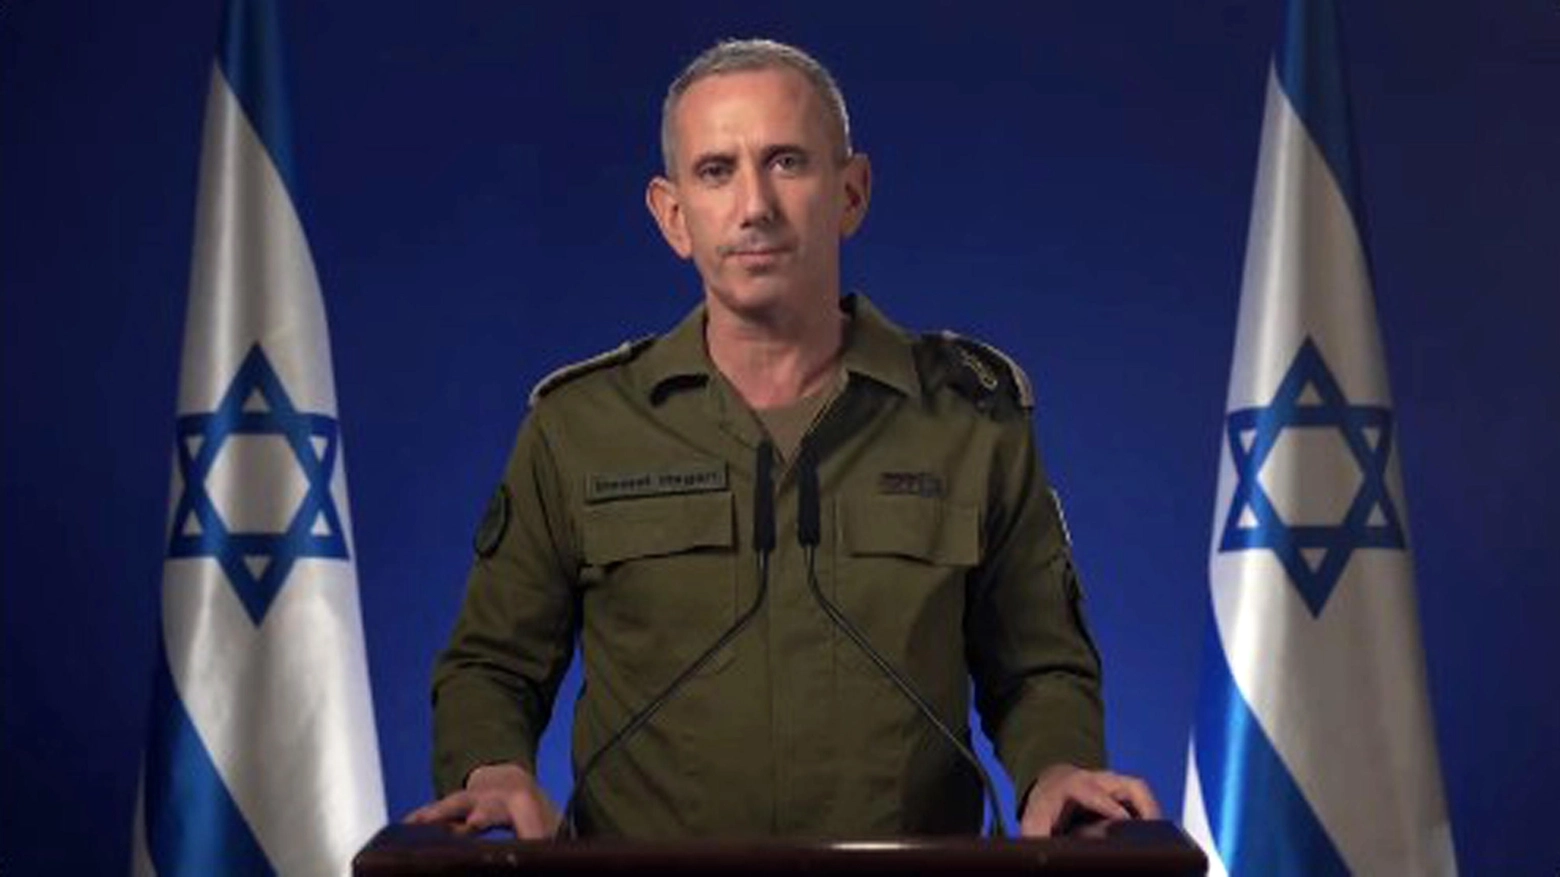 Il ruolo dei militari ultraortodossi. L’ipotesi rilanciata dai media ha creato un nuovo scontro politico. Netanyahu: “Il massimo dell’assurdità”. Ma l’opposizione lo attacca